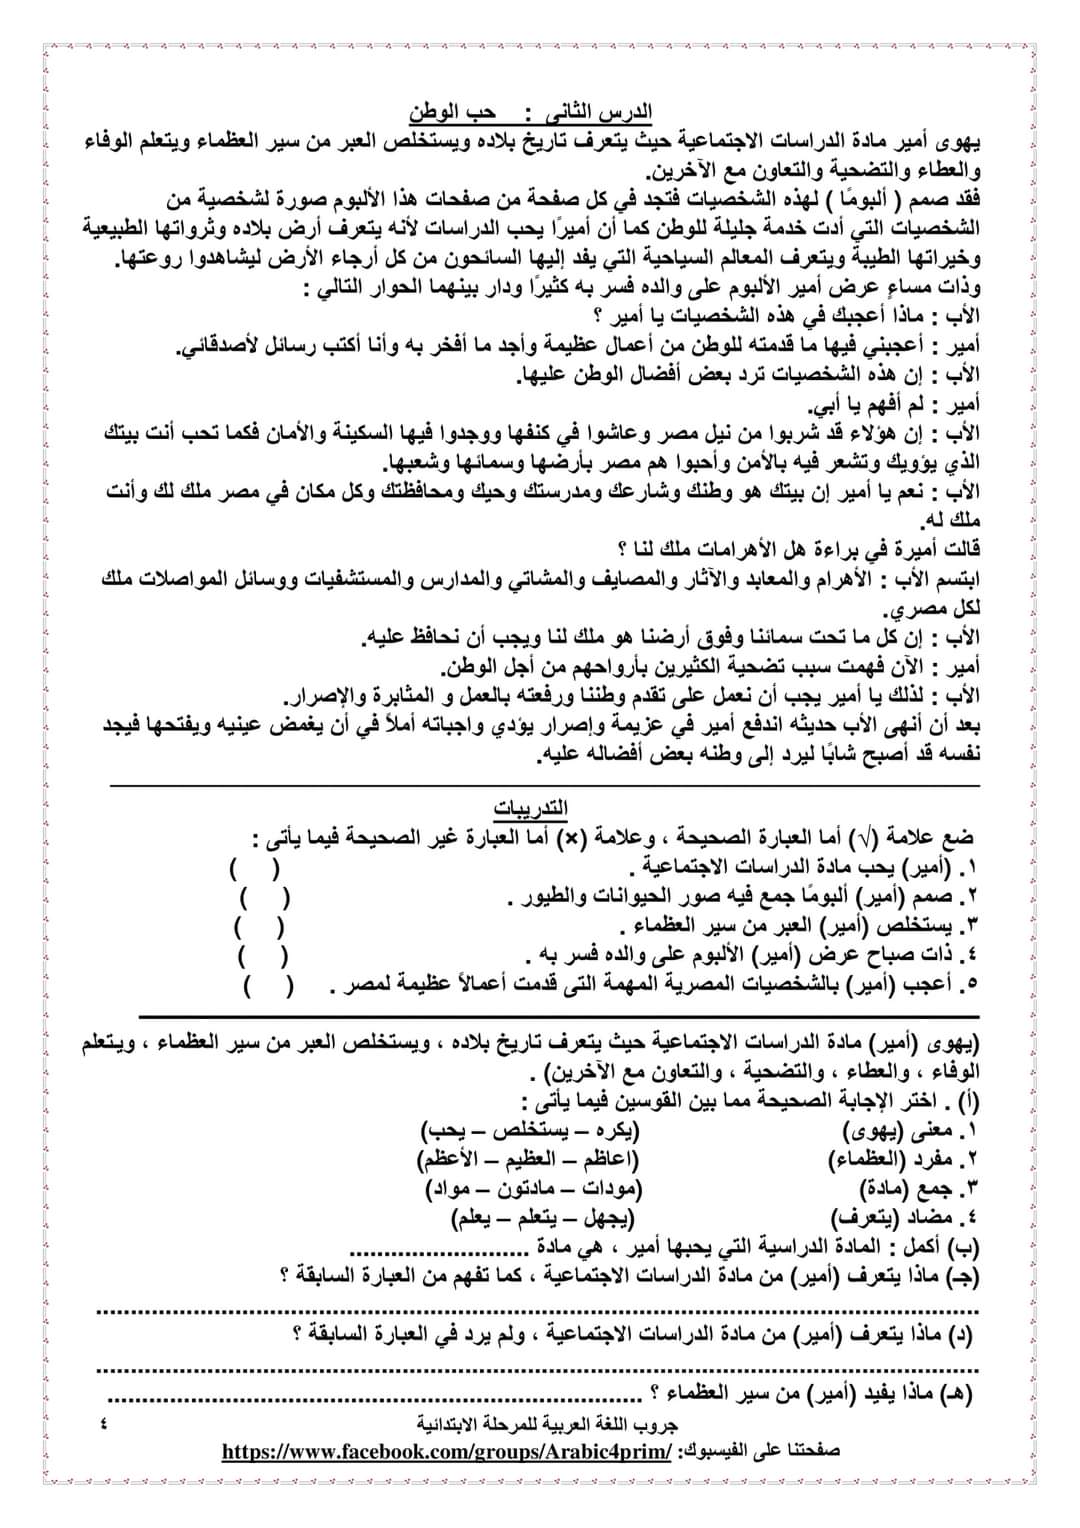 مراجعة نهائية لغة عربية للصف الخامس الابتدائي - احمد بدير عبد العاطي